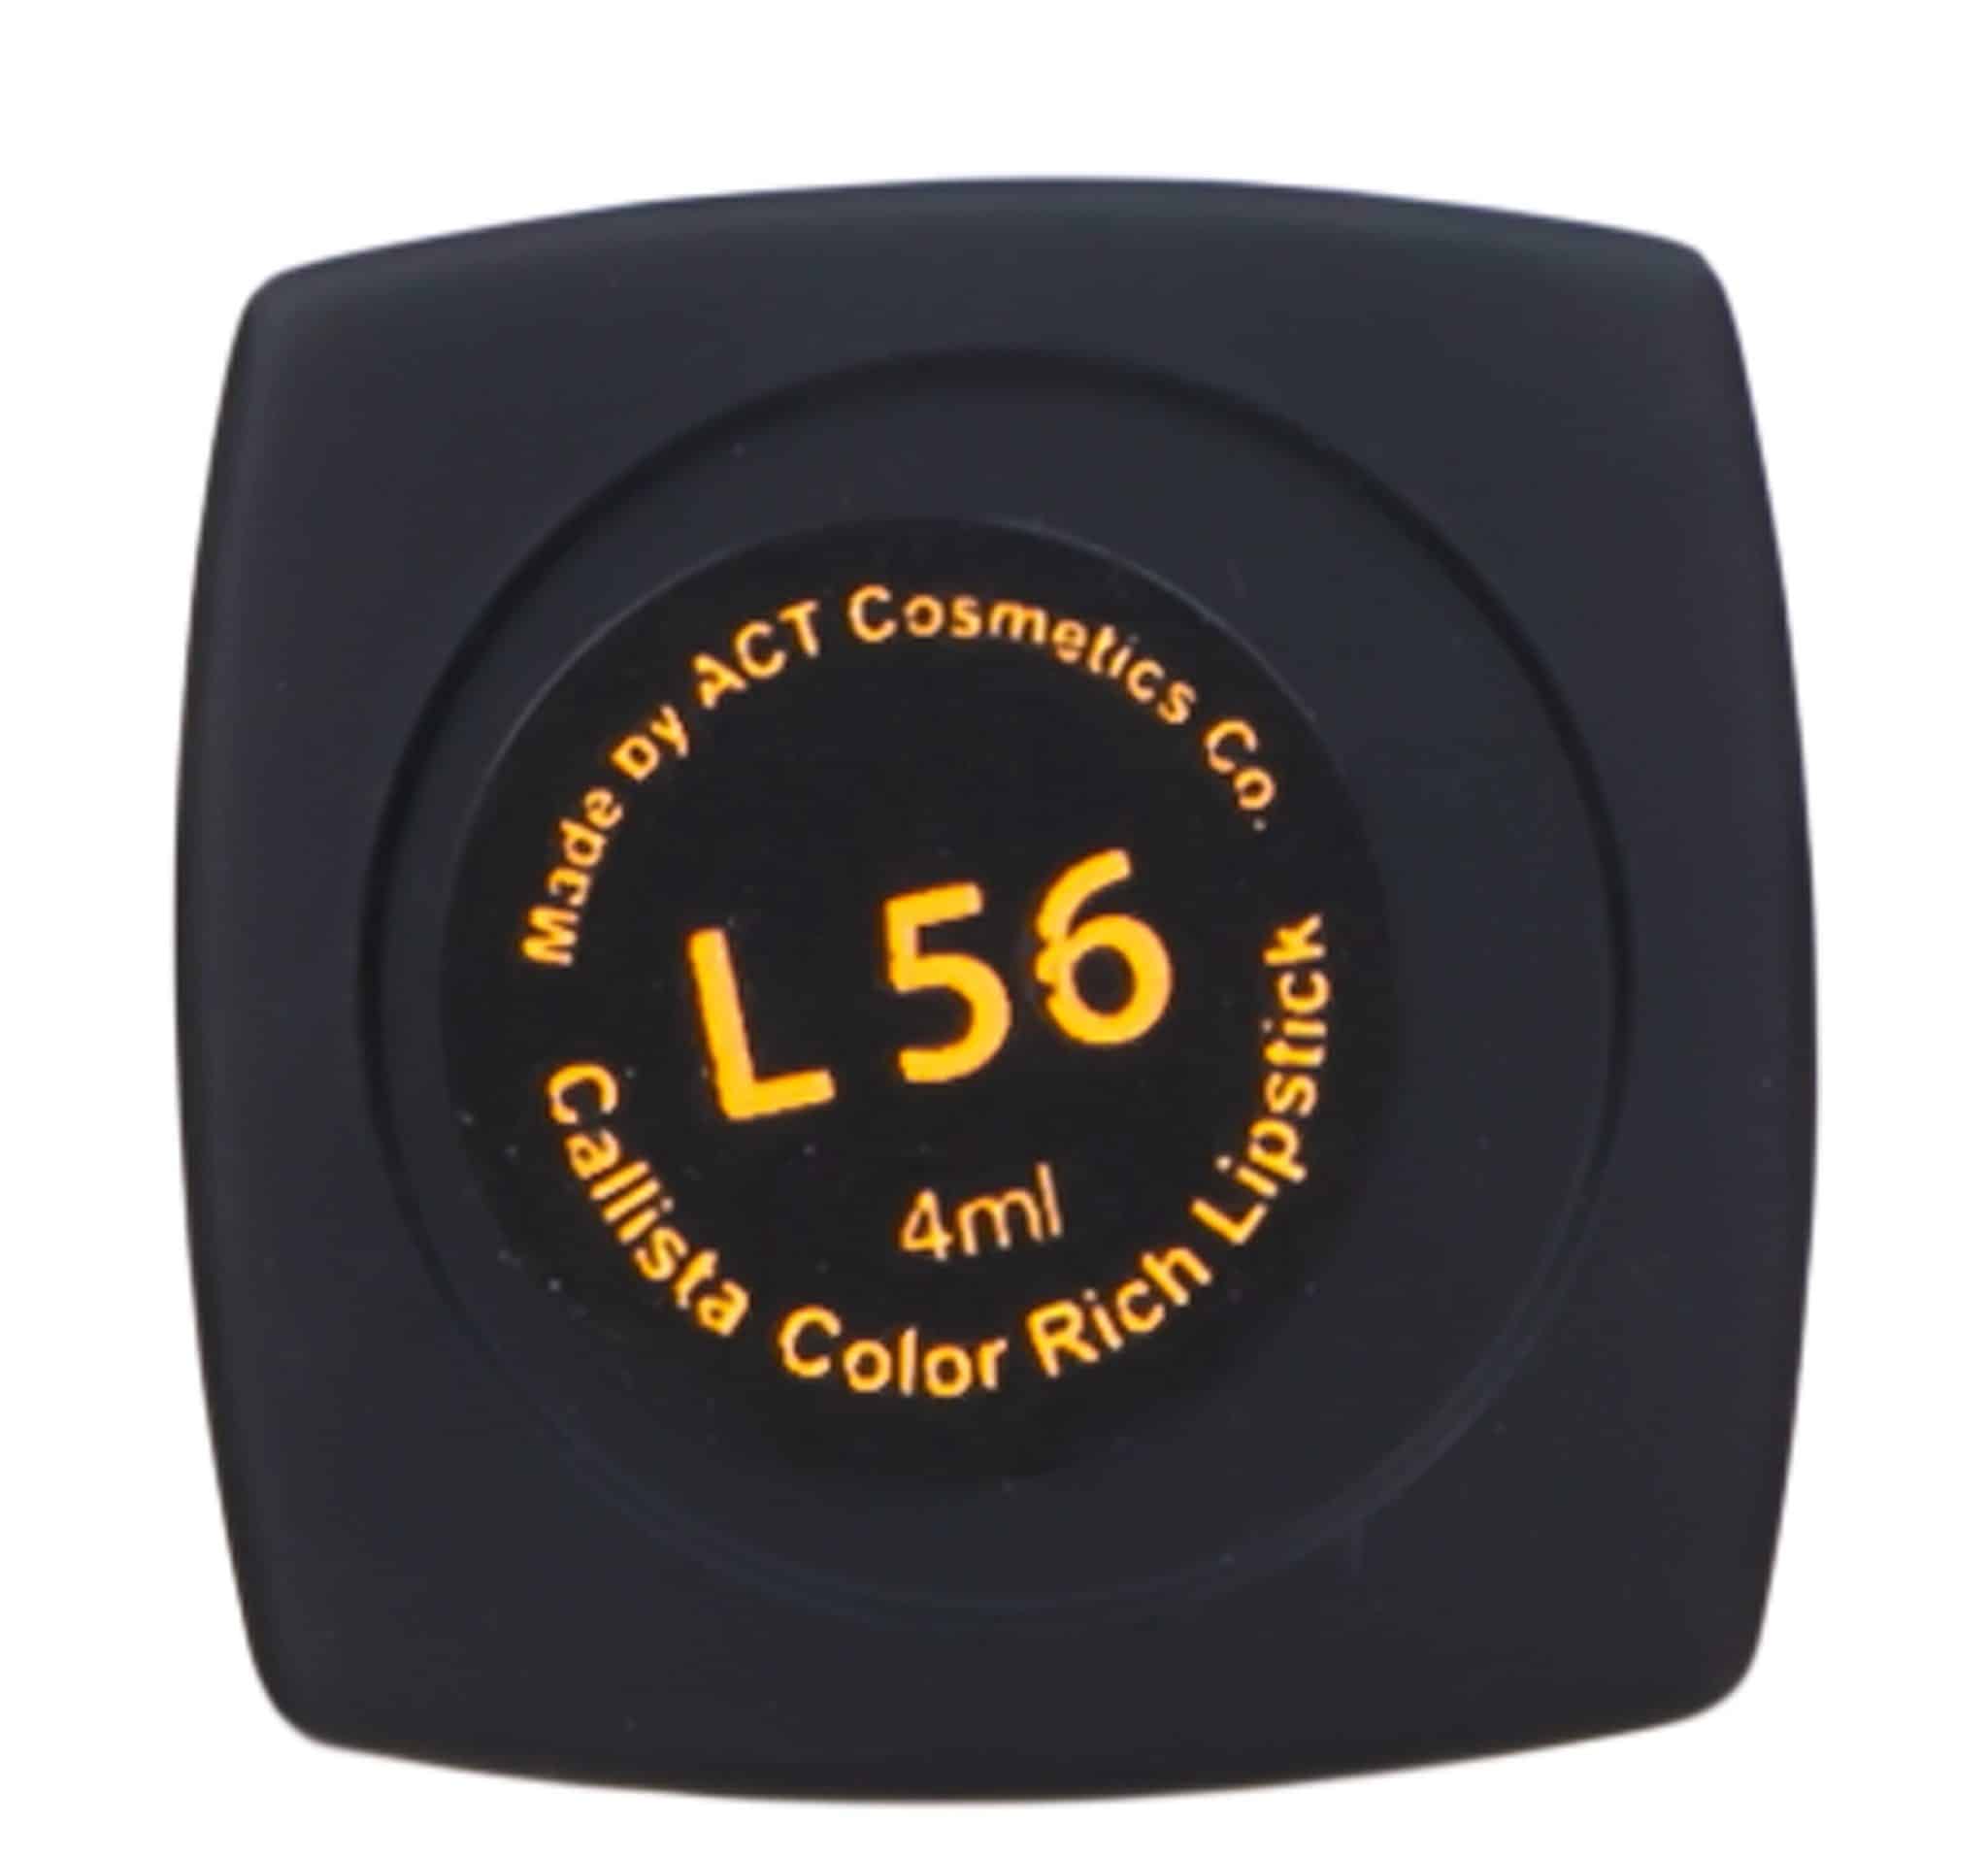 رژ لب جامد کالیستا سری Color Rich شماره L56 | گارانتی اصالت و سلامت فیزیکی کالا